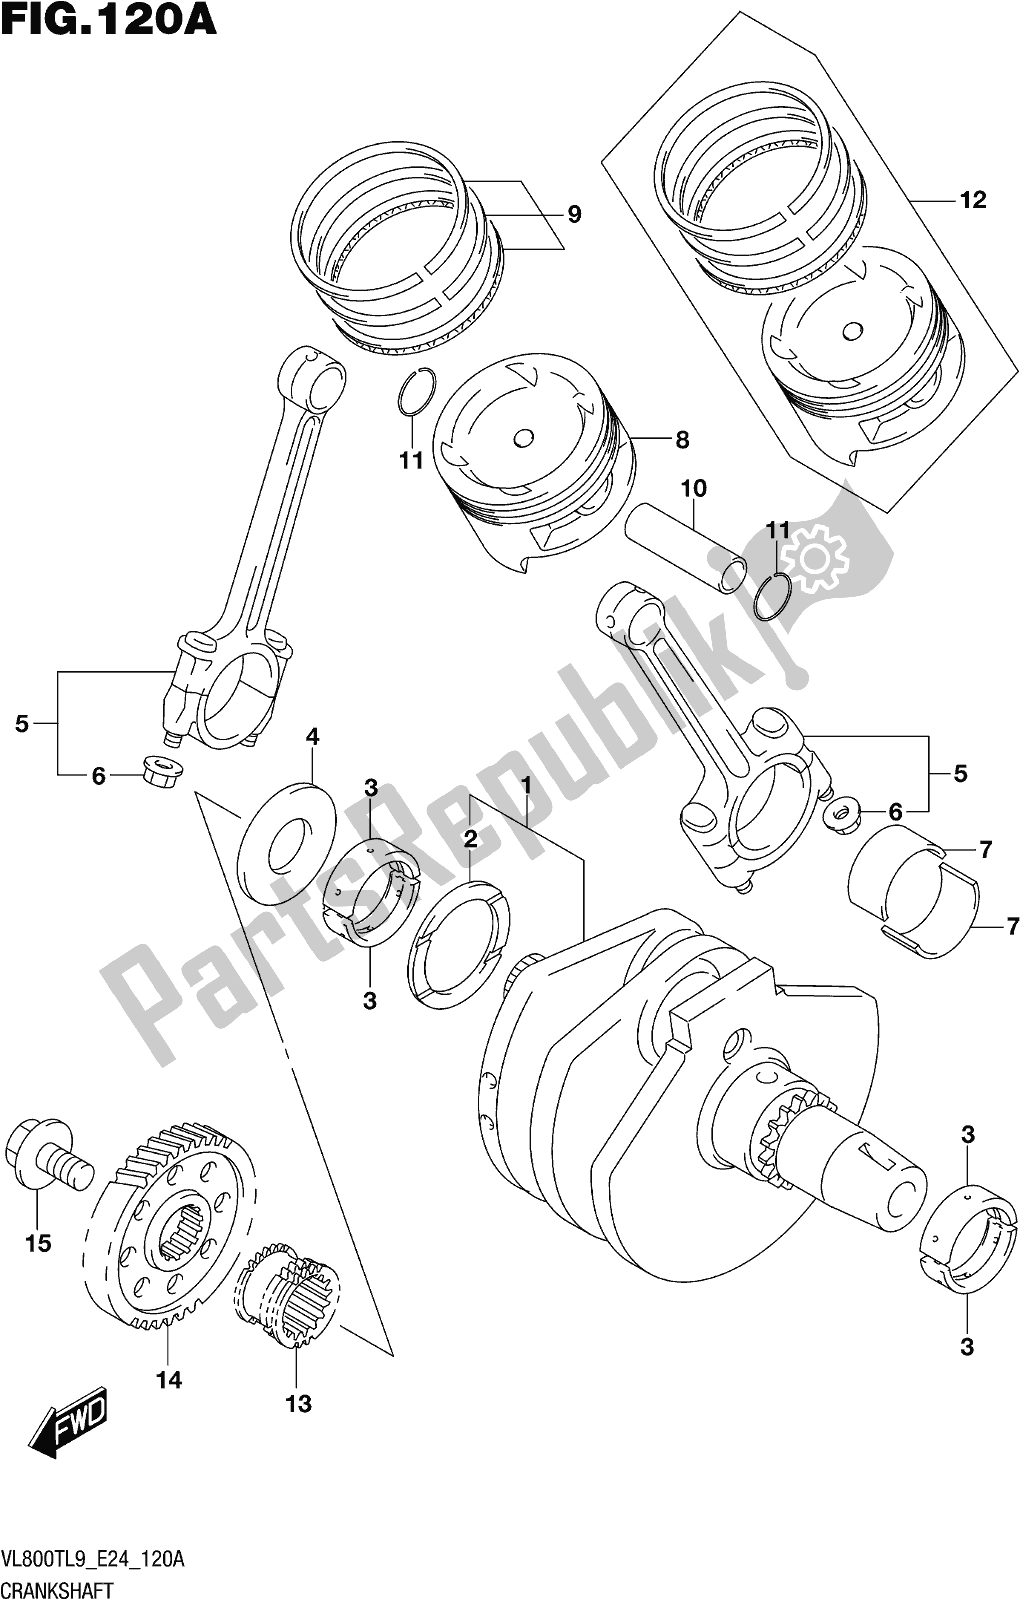 Alle onderdelen voor de Fig. 120a Crankshaft van de Suzuki VL 800T 2019